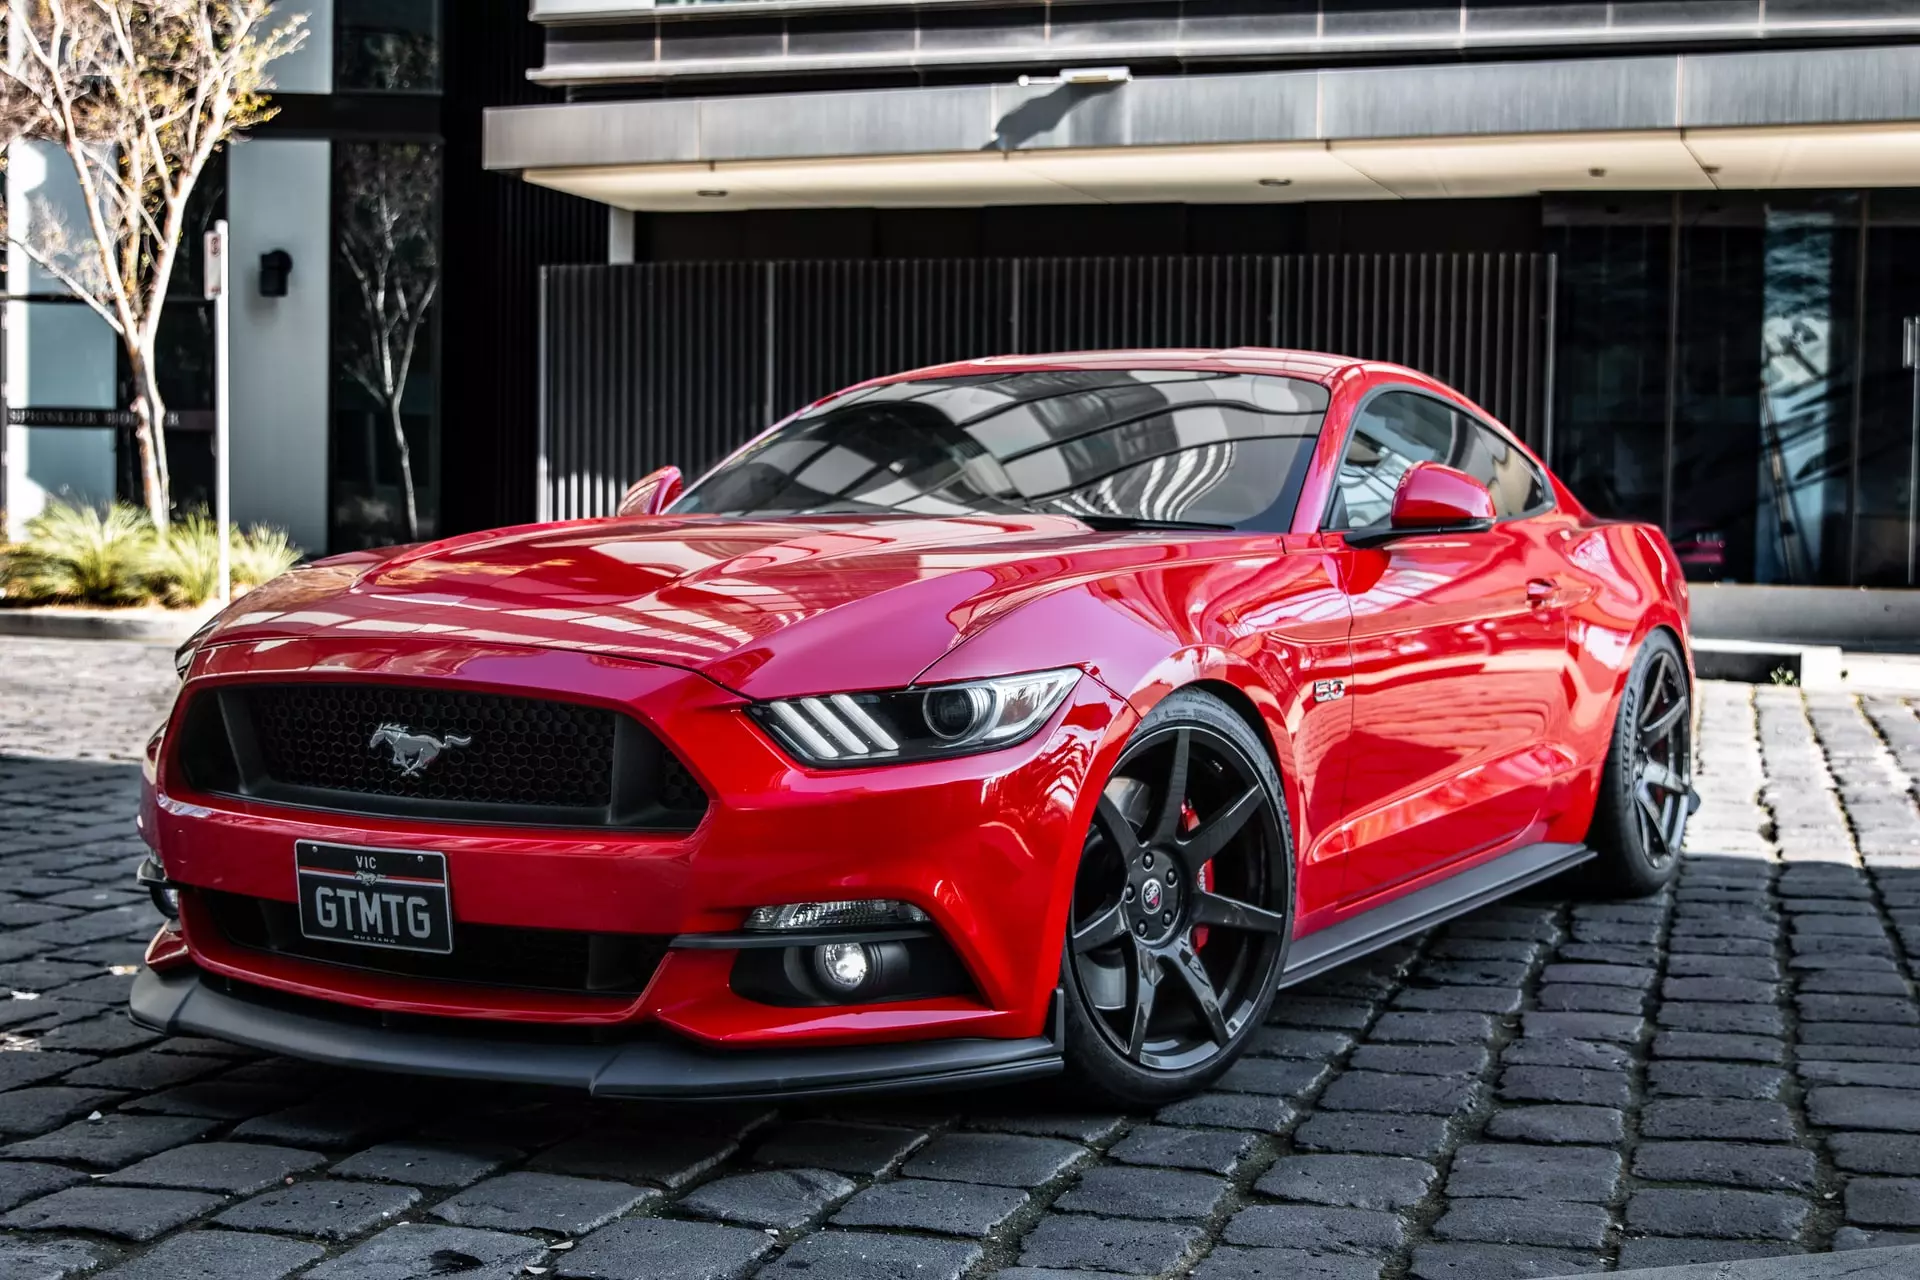 Coche Mustang rojo en la calle